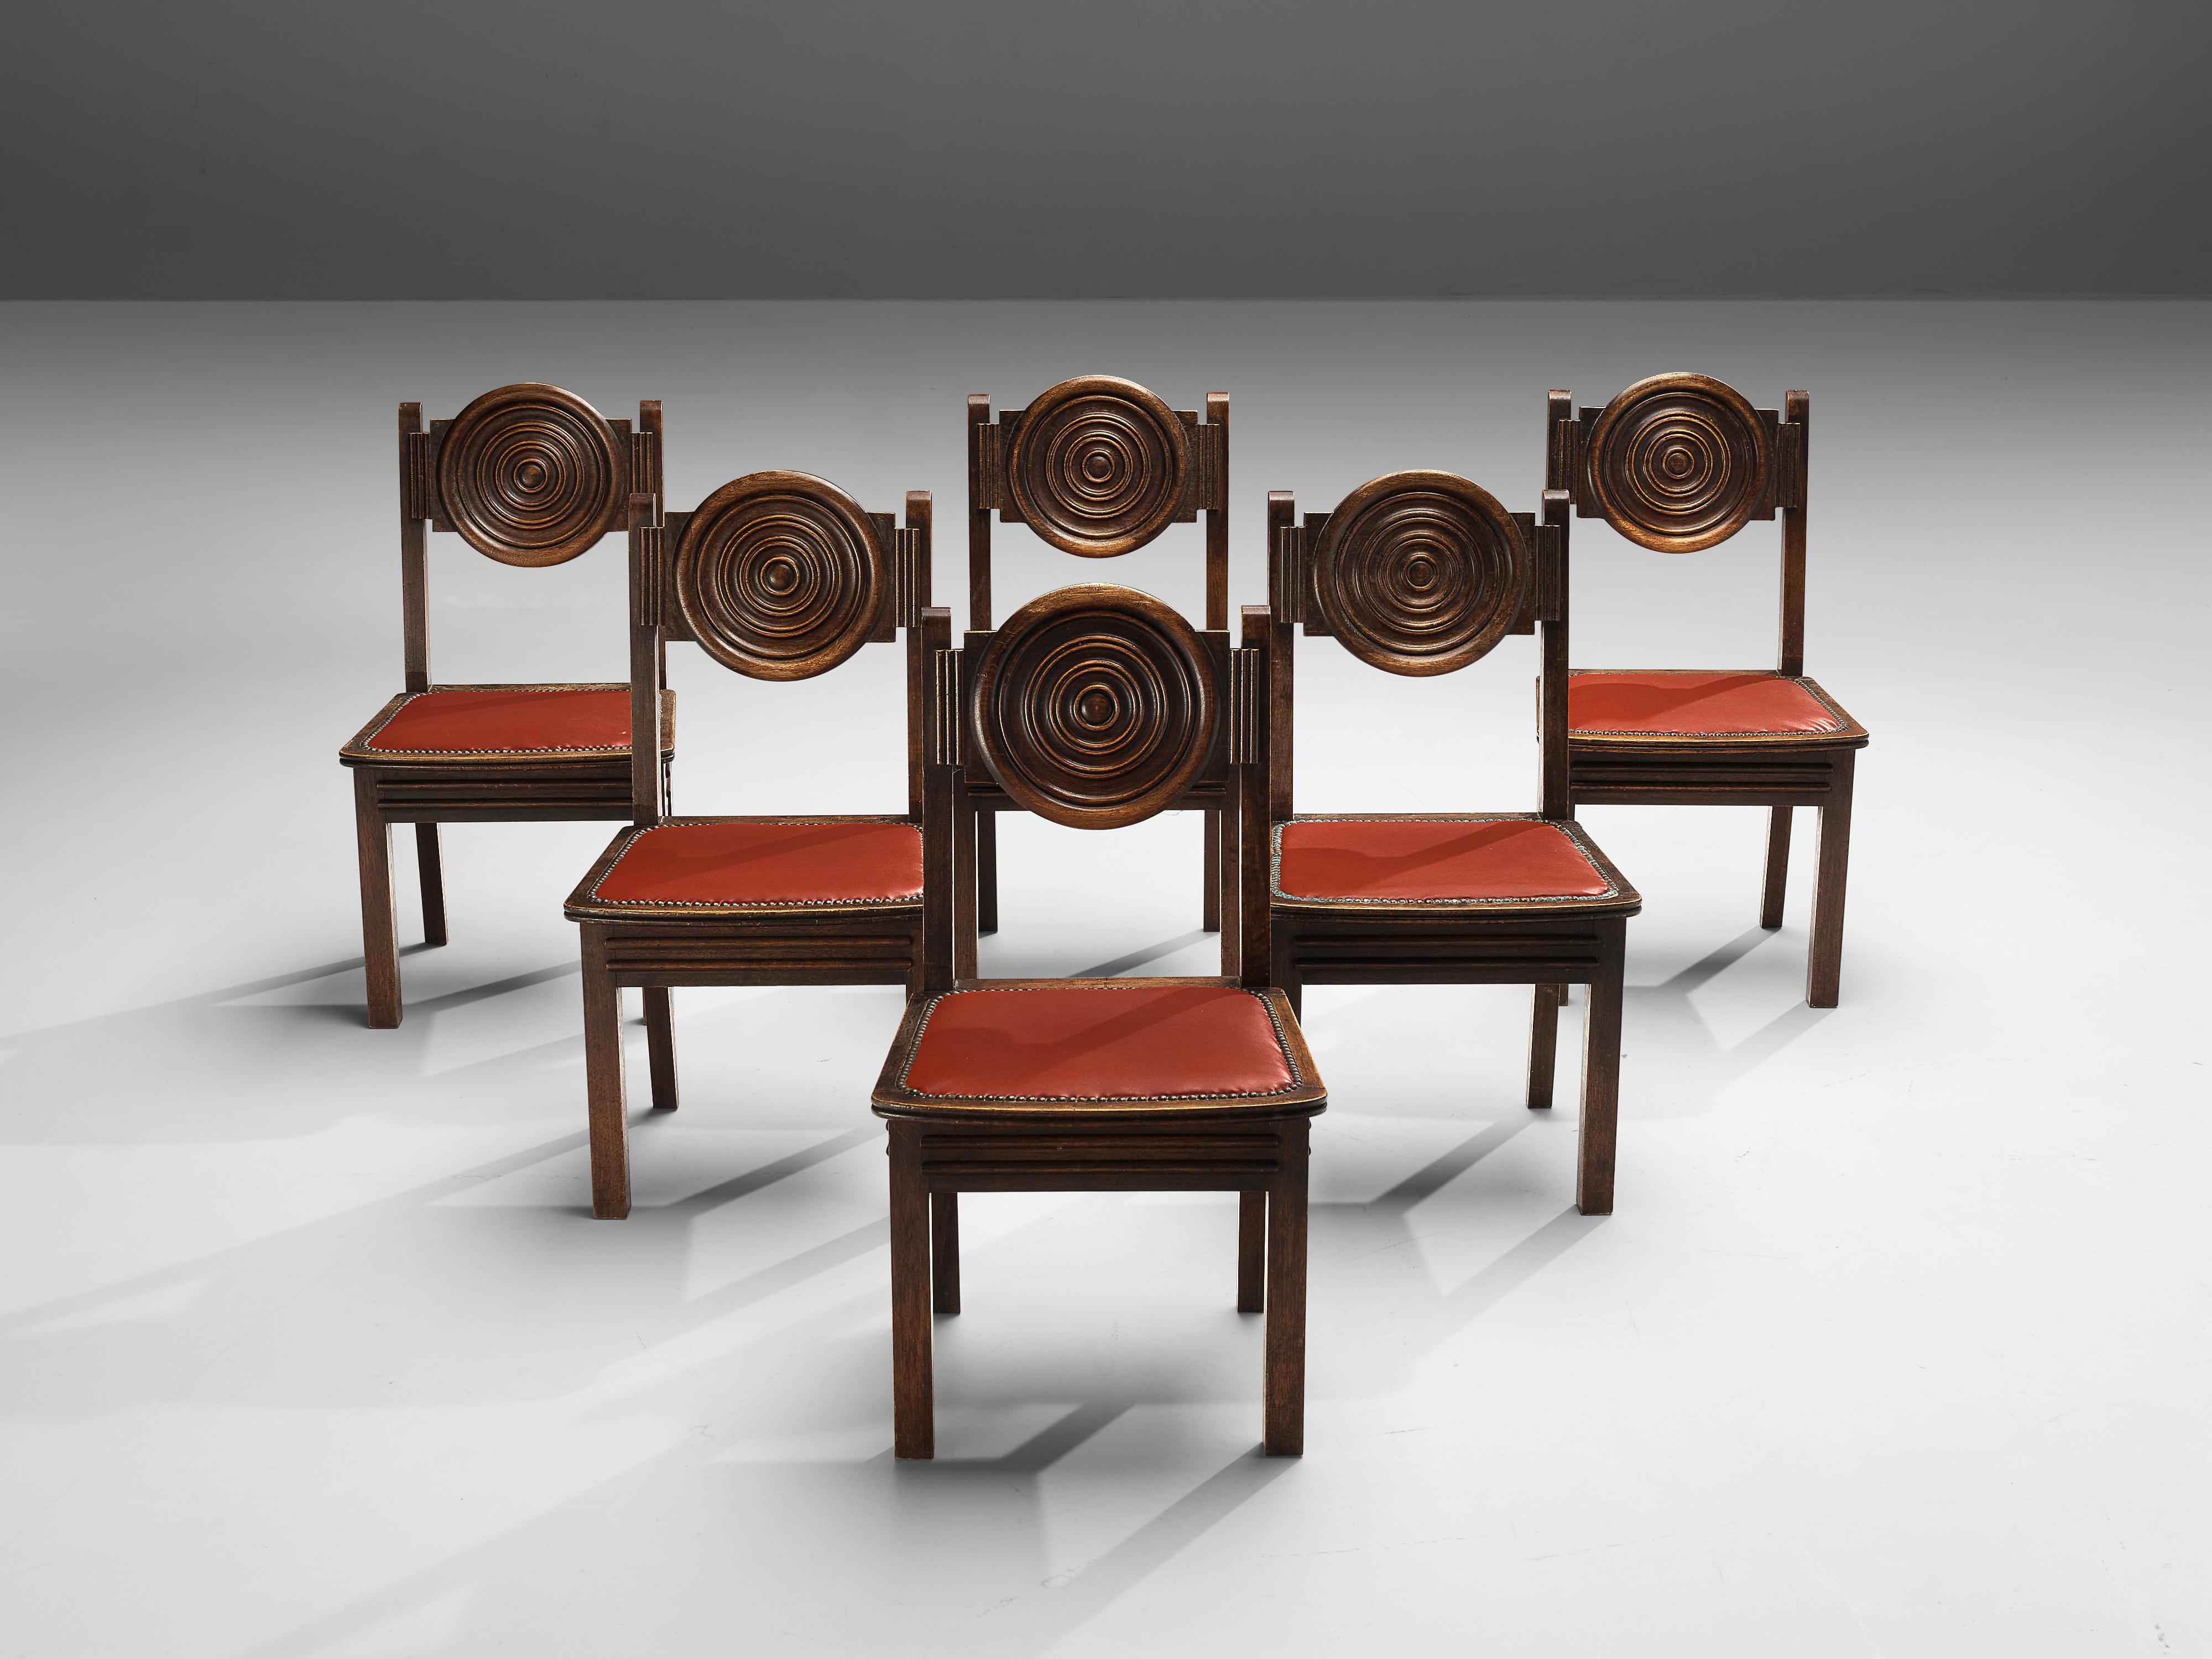 Art Deco Esszimmerstühle, Eiche gebeizt, Kunstleder, Messing, Frankreich, 1940er Jahre

Mit seiner runden Rückenlehne ist dieses Set aus sechs französischen Esszimmerstühlen ein echter Blickfang. Geschnitzte Ringe betonen die runde Form und schaffen